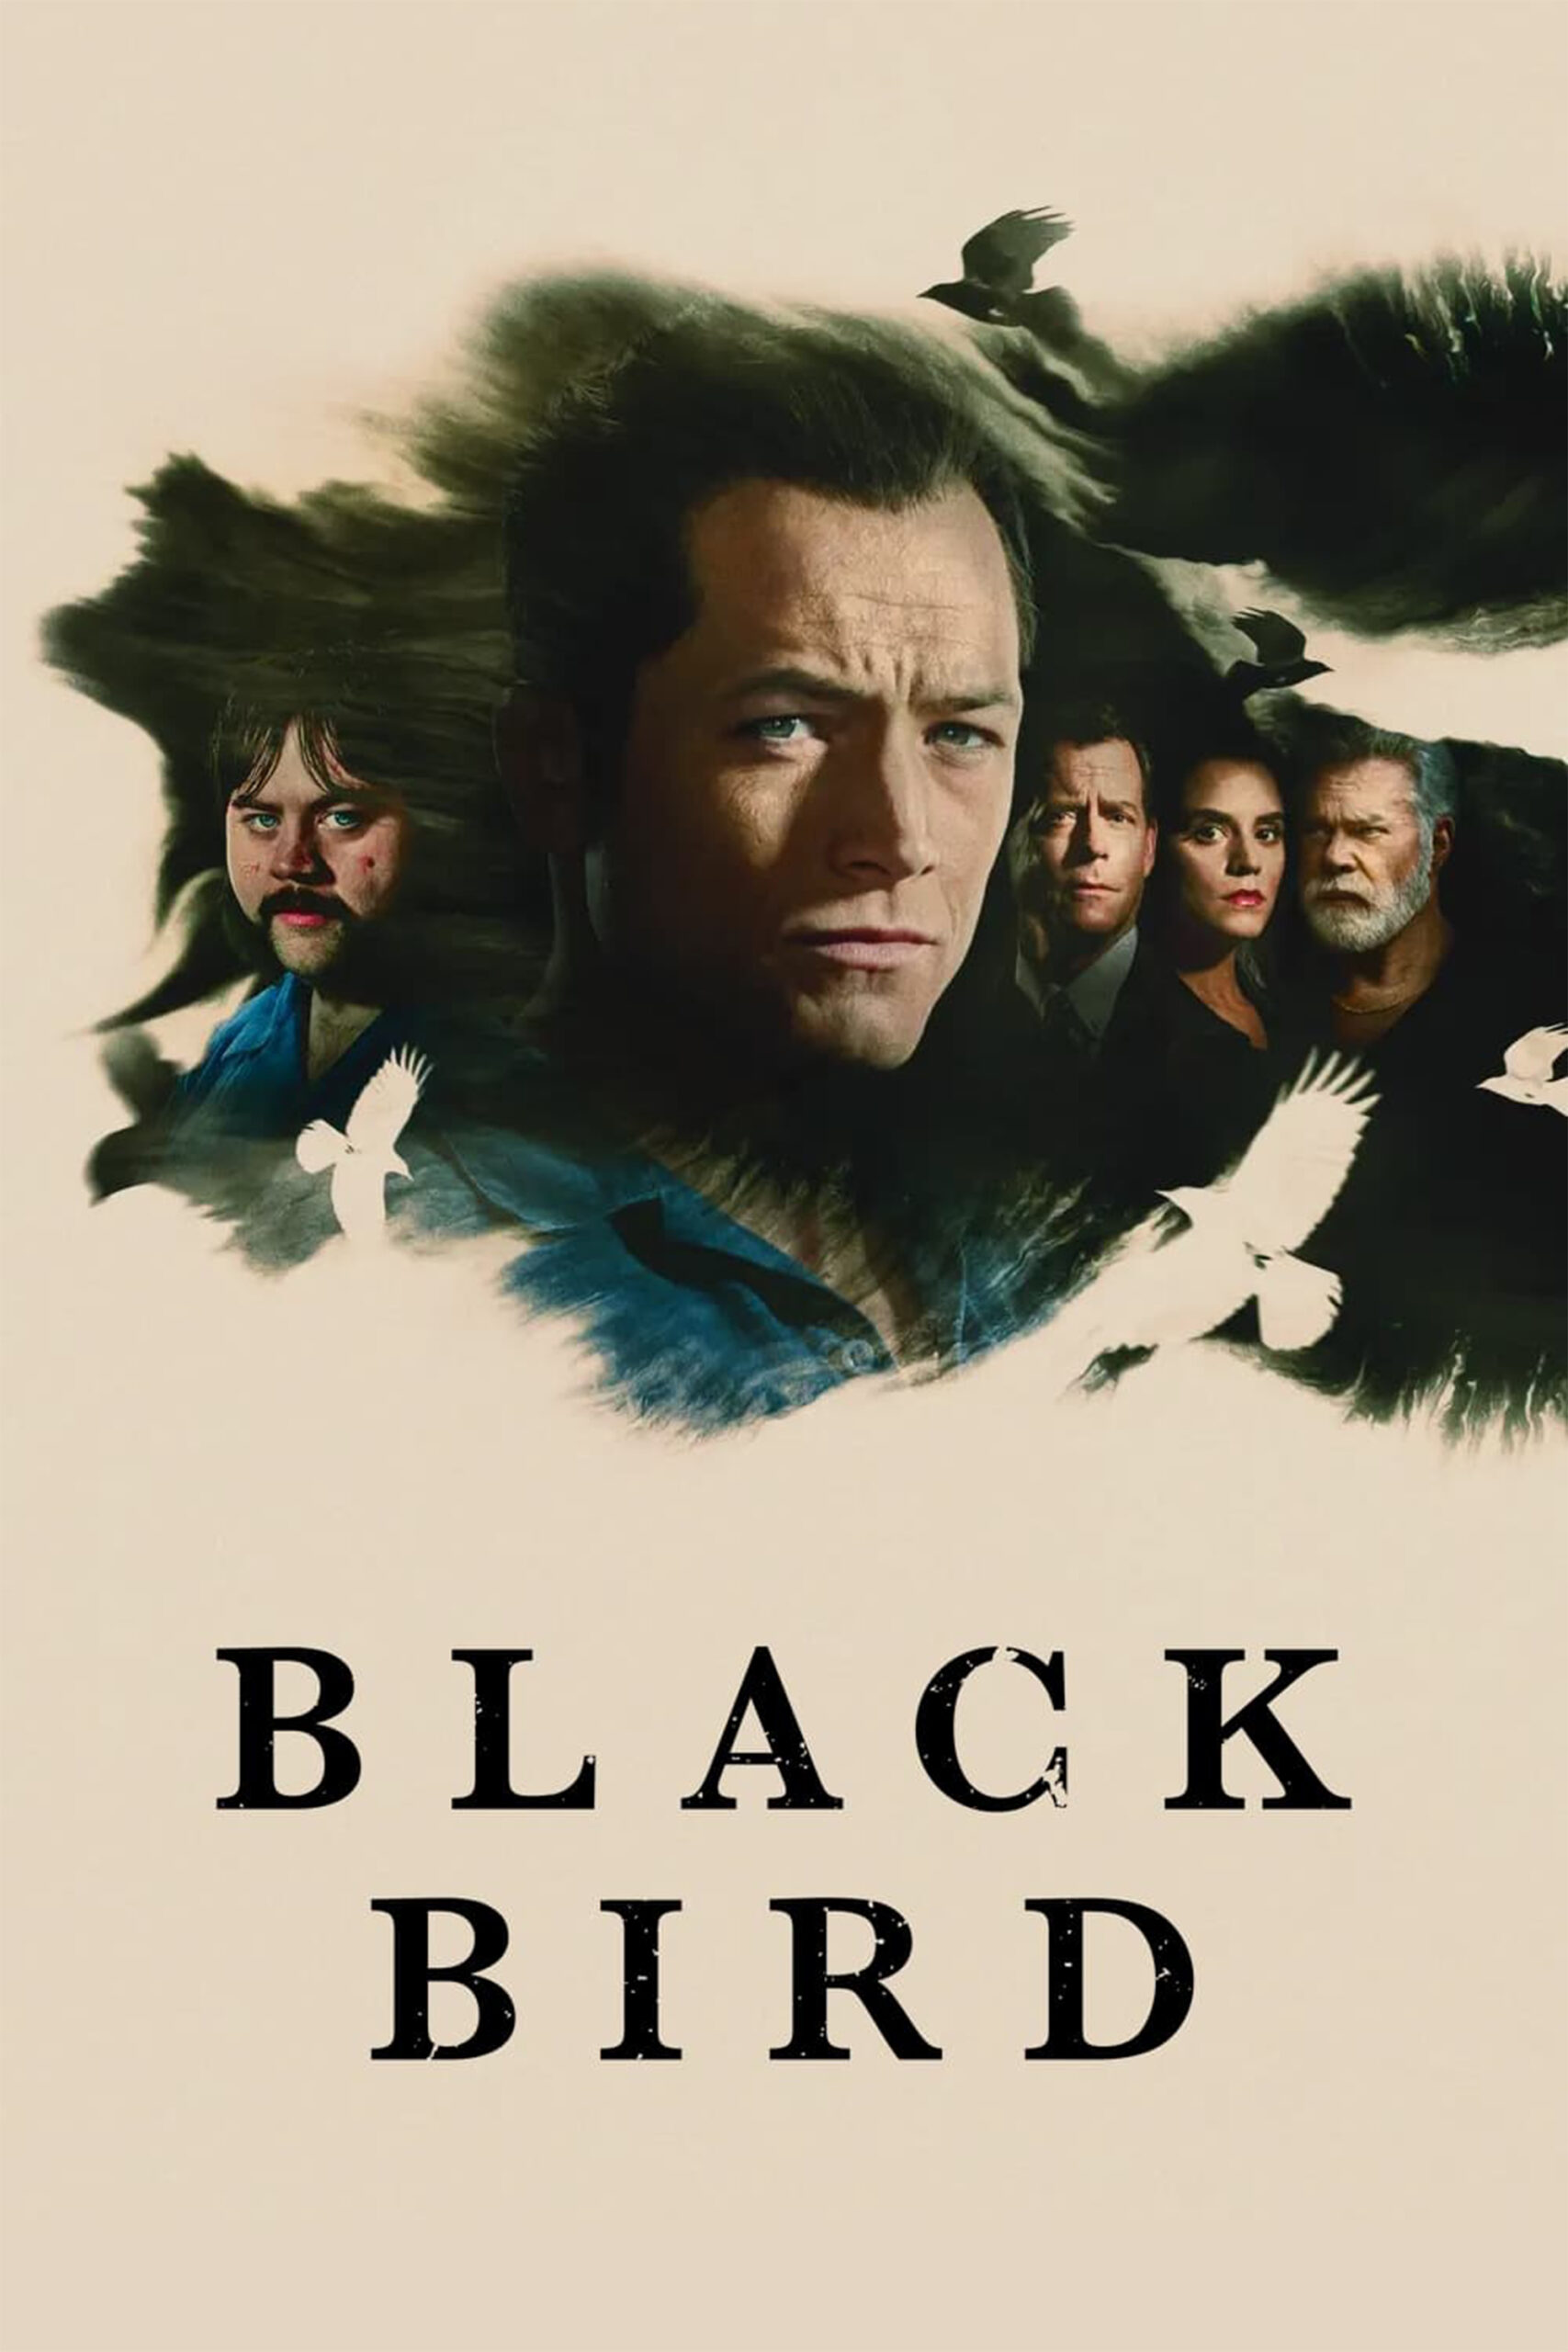 پرنده سیاه – Black Bird